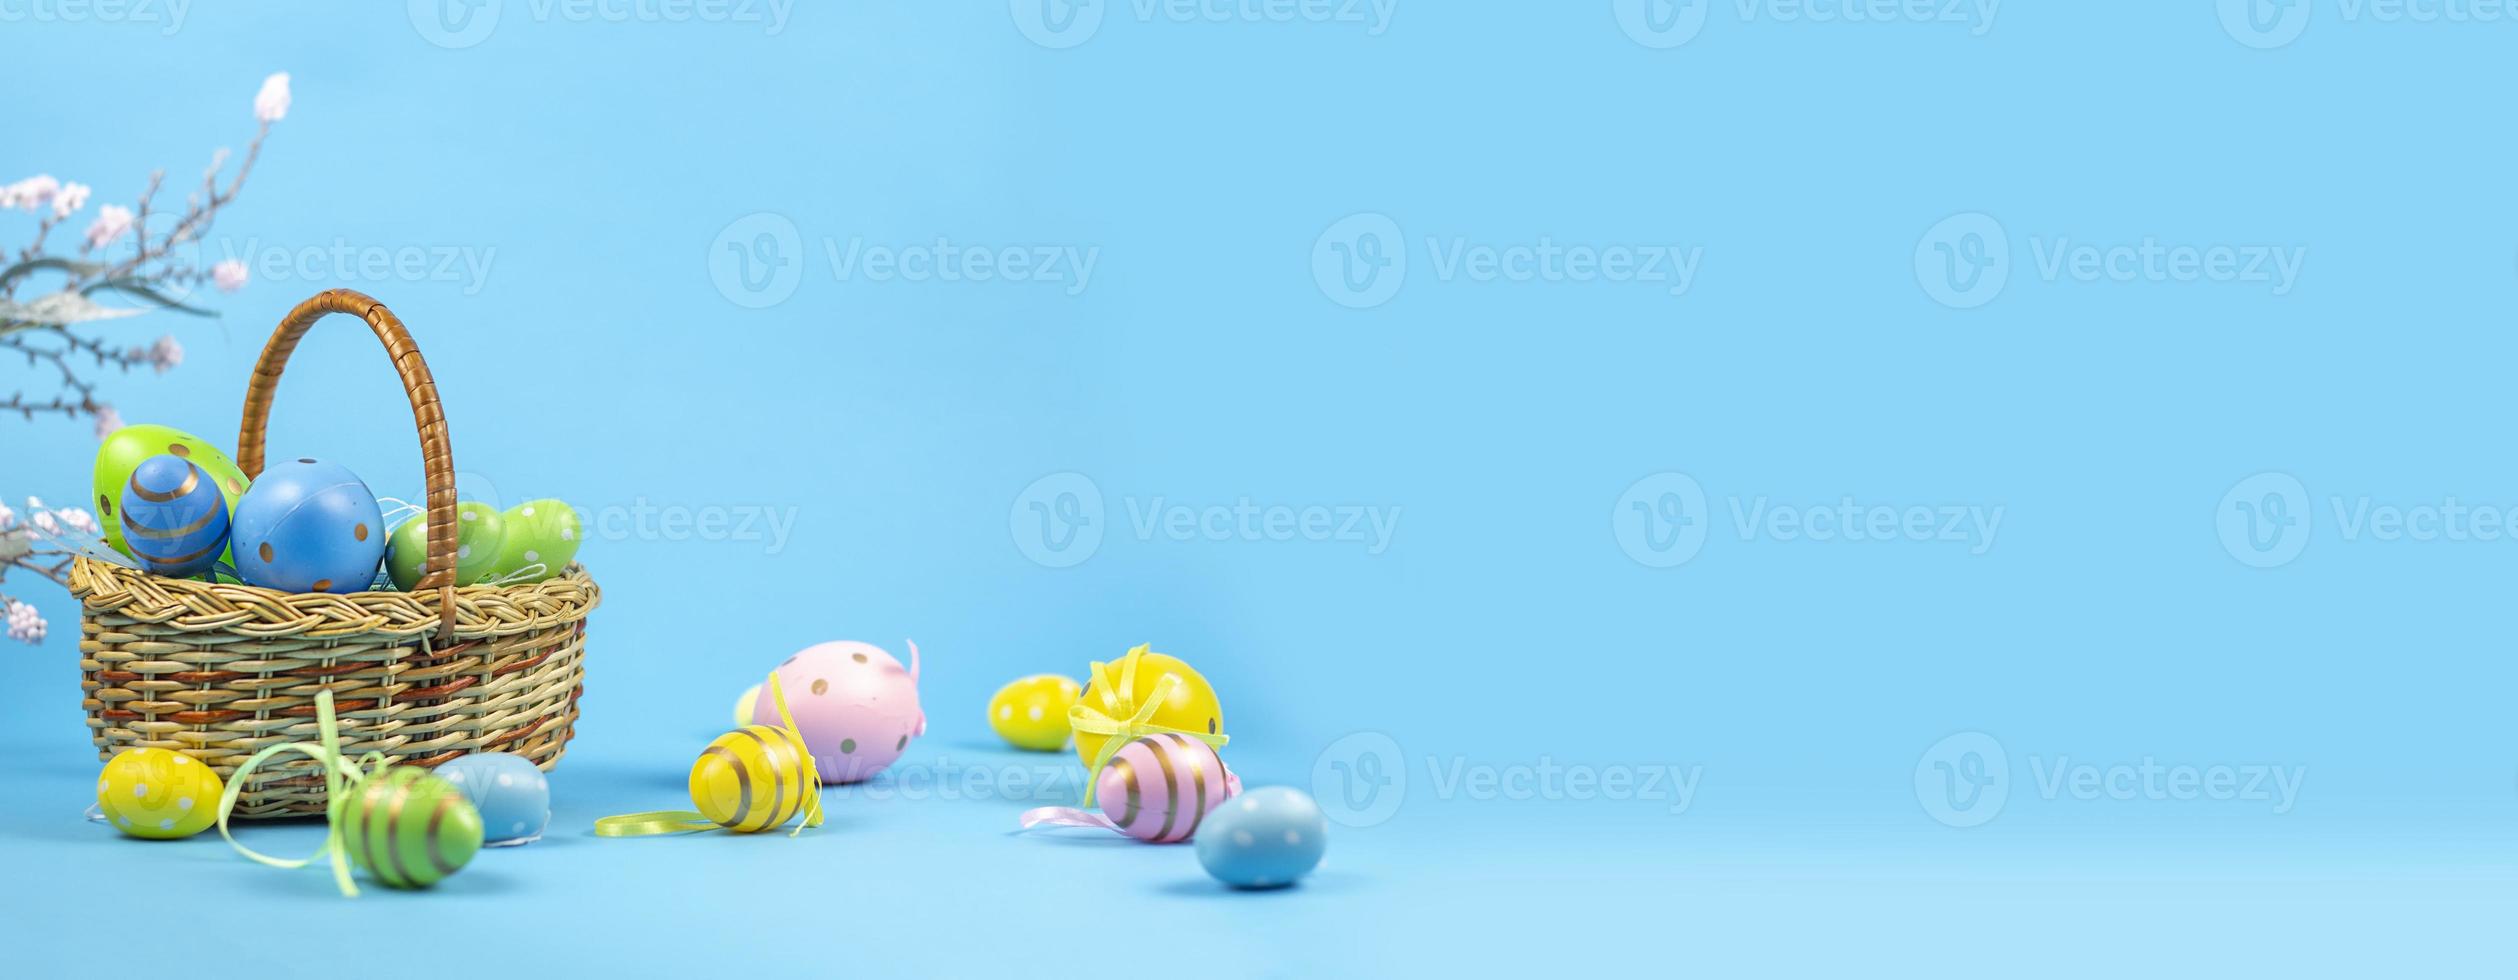 fondo de pascua. huevos de Pascua. feliz tarjeta de pascua. huevos de pascua multicolores. Pascua de Resurrección. bandera. copie el espacio foto